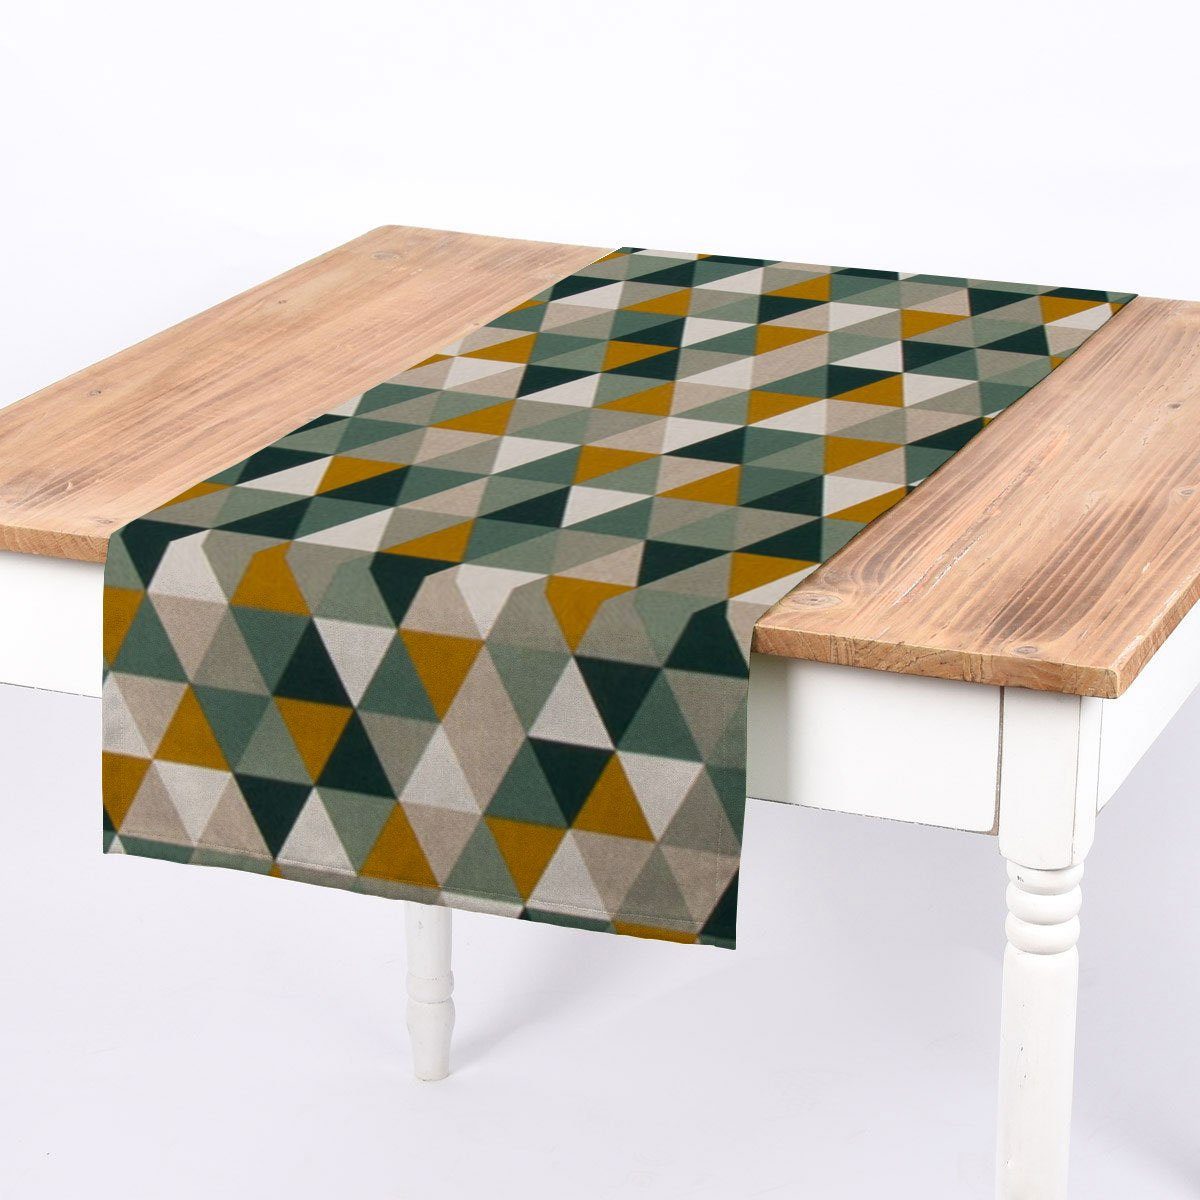 SCHÖNER LEBEN. Tischläufer SCHÖNER handmade Dreiecke gelb natur Tischläufer LEBEN. 40x160cm, grün